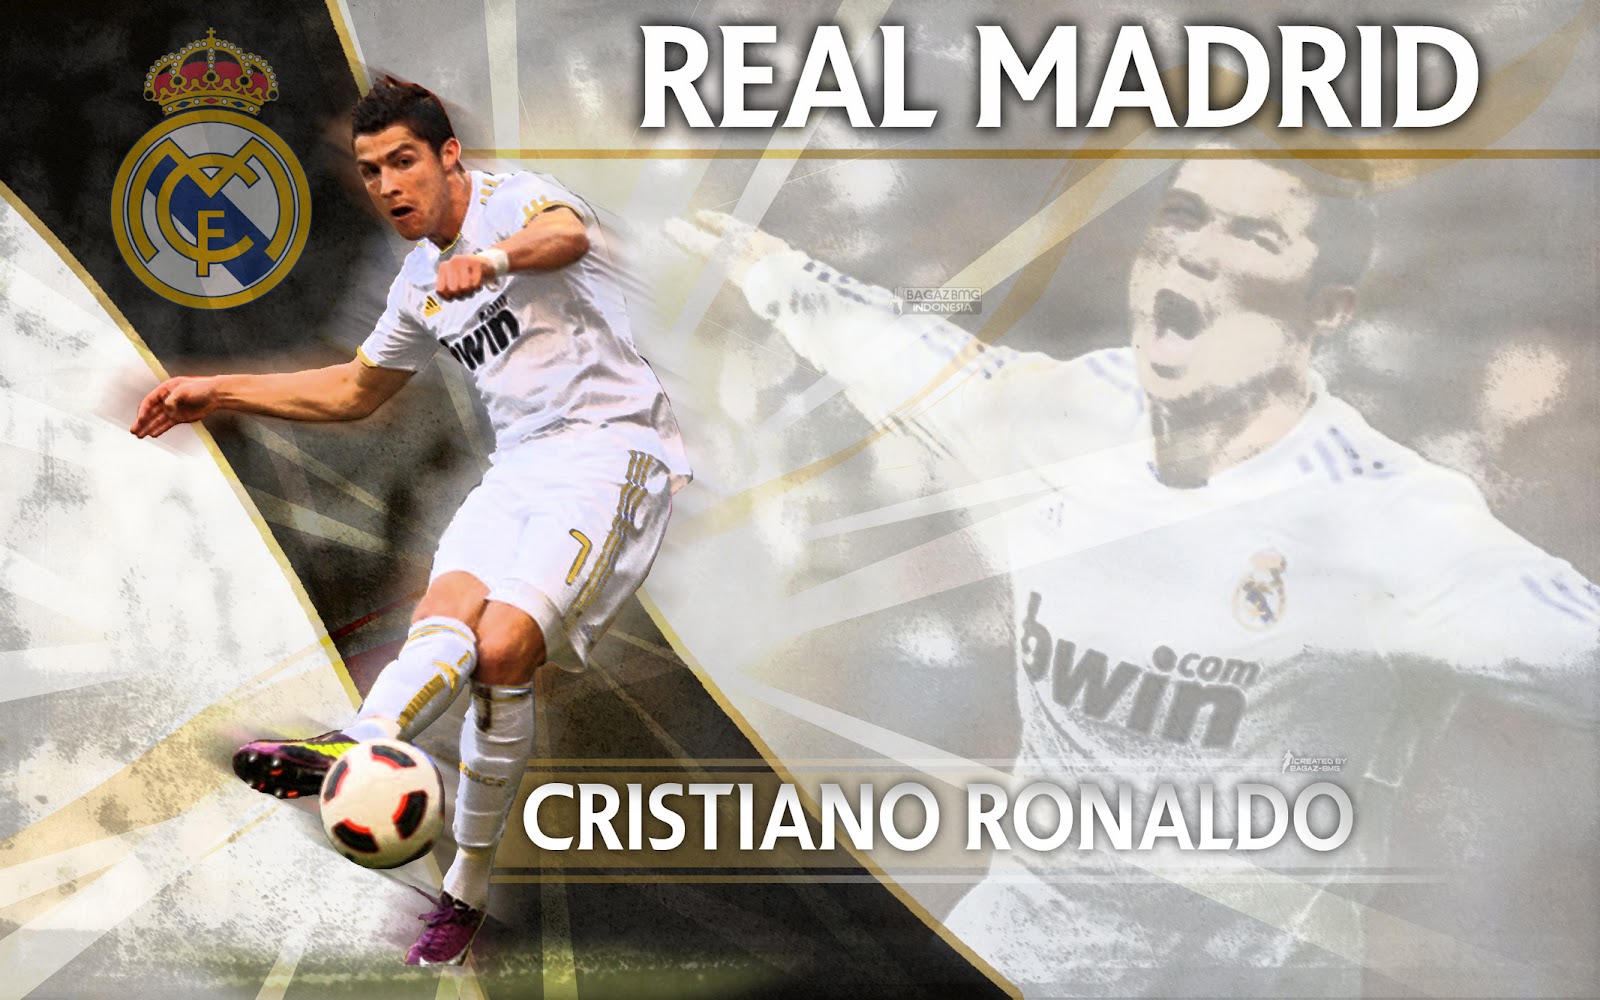 http://3.bp.blogspot.com/-eqTvYATGJK8/T4rDrc26deI/AAAAAAAAAO0/d3C93lOAew8/s1600/Ronaldo+Hd+Wallpaper+2012+-+CR7.jpg